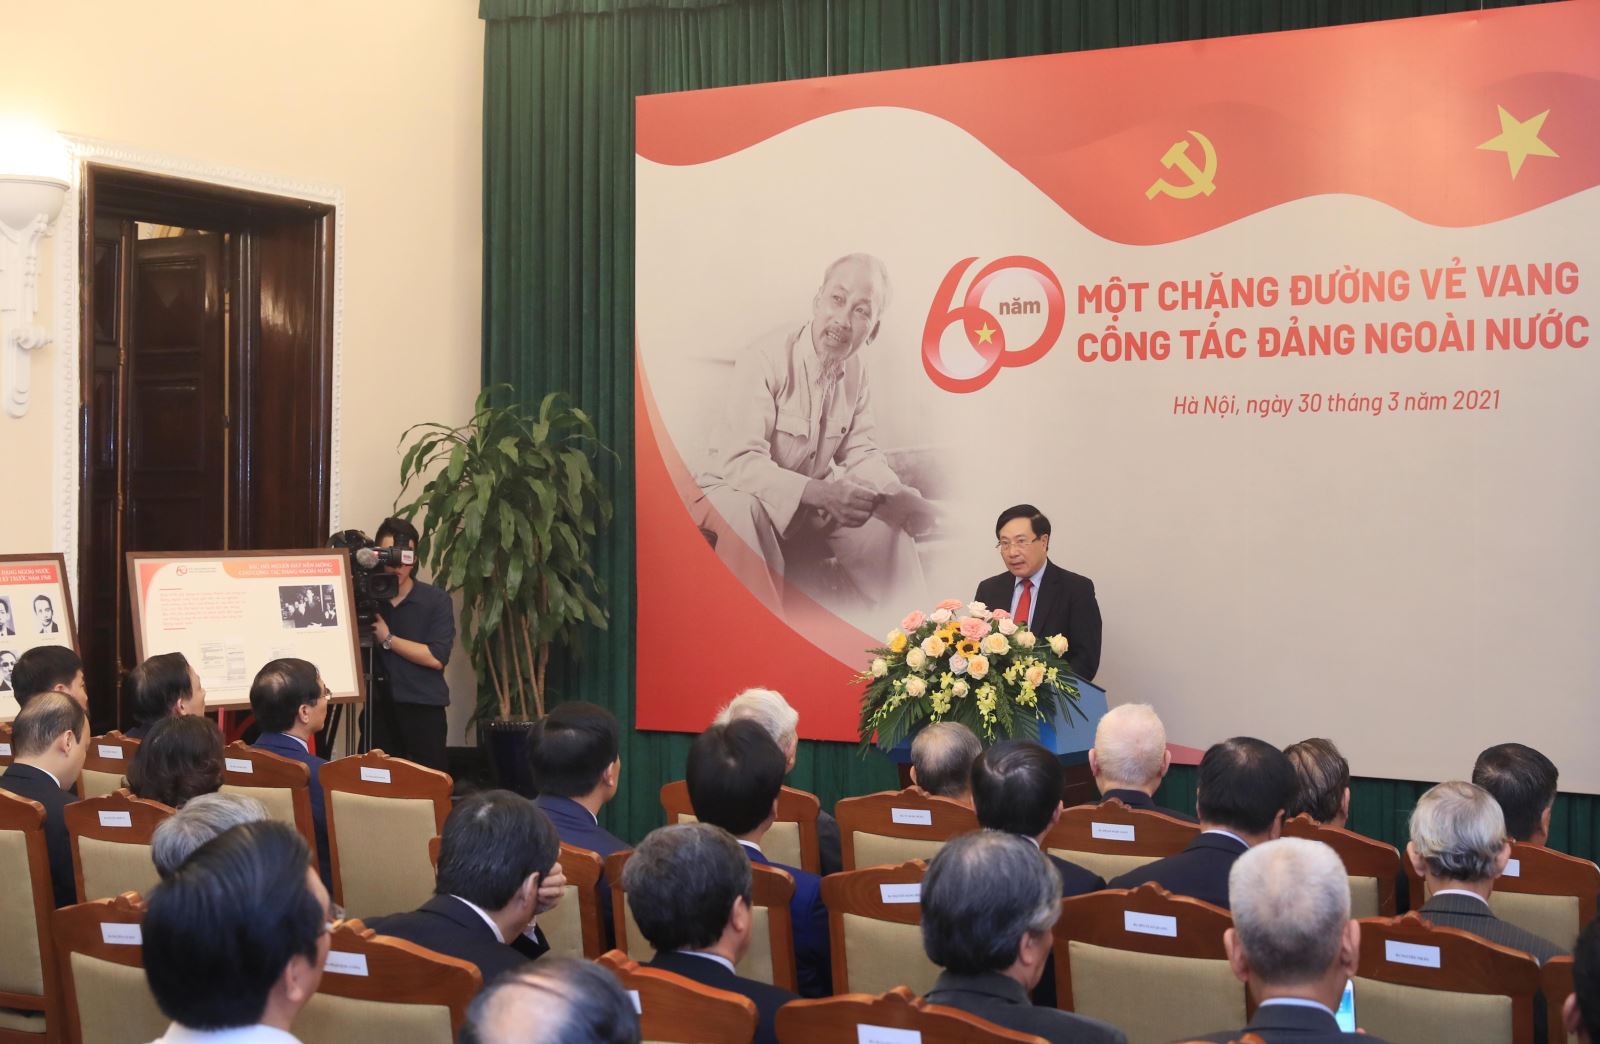 Phó Thủ tướng, Bộ trưởng Bộ Ngoại giao Phạm Bình Minh phát biểu tại buổi gặp mặt kỷ niệm 60 năm công tác Đảng ngoài nước. Ảnh: Lâm Khánh/TTXVN